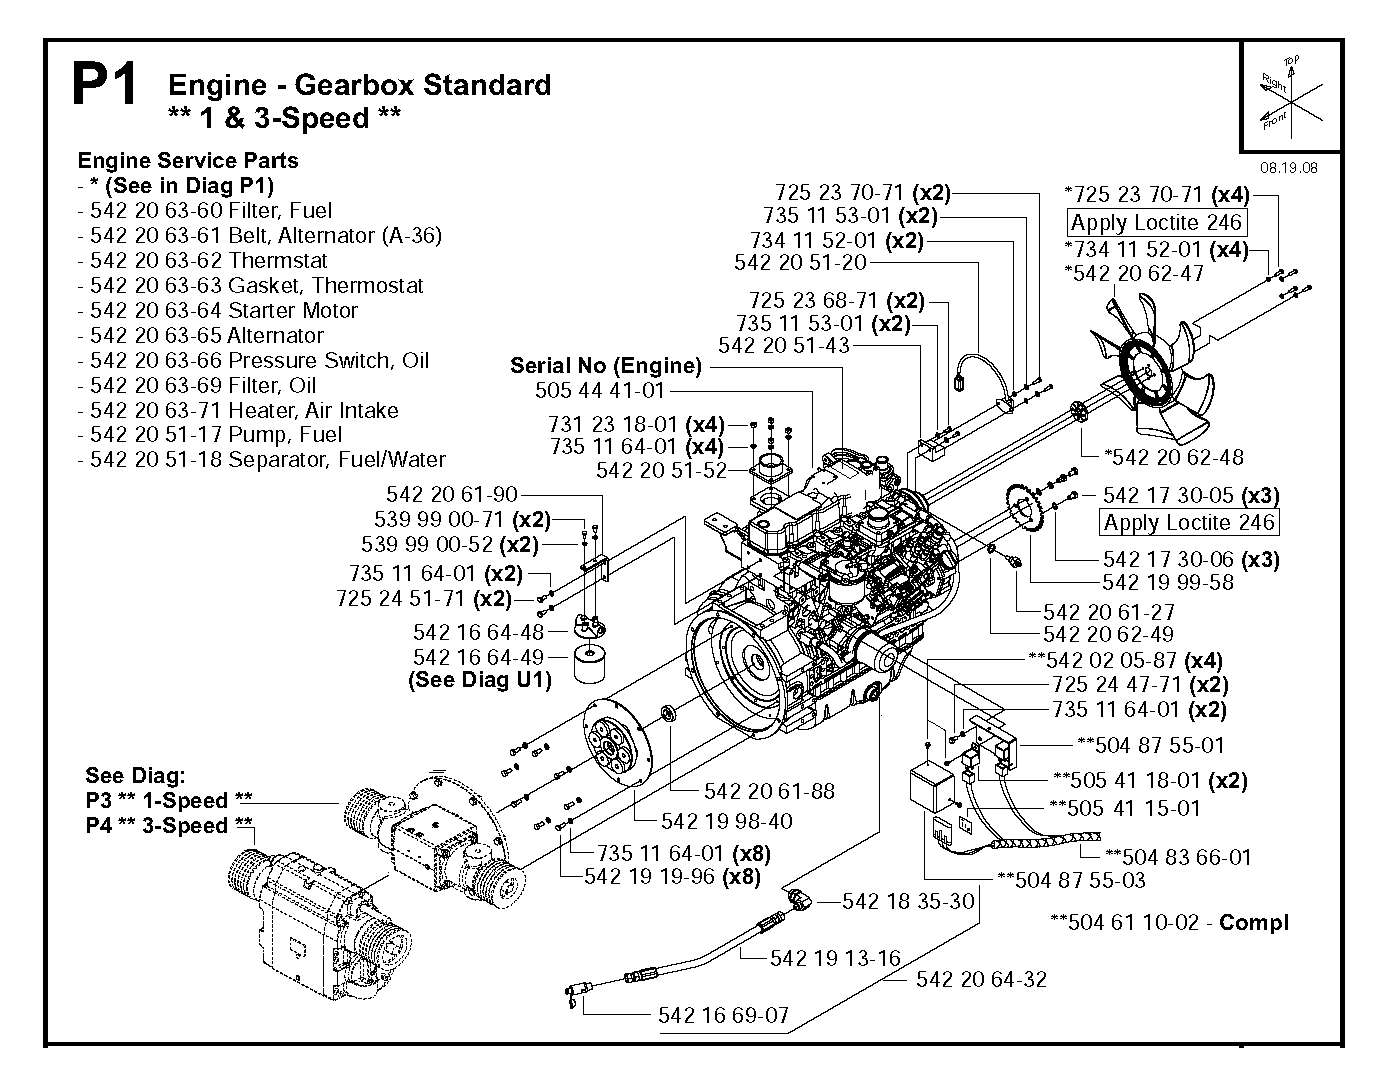 ENGINE - GEARBOX STANDARD, 1 & 3-SPEED